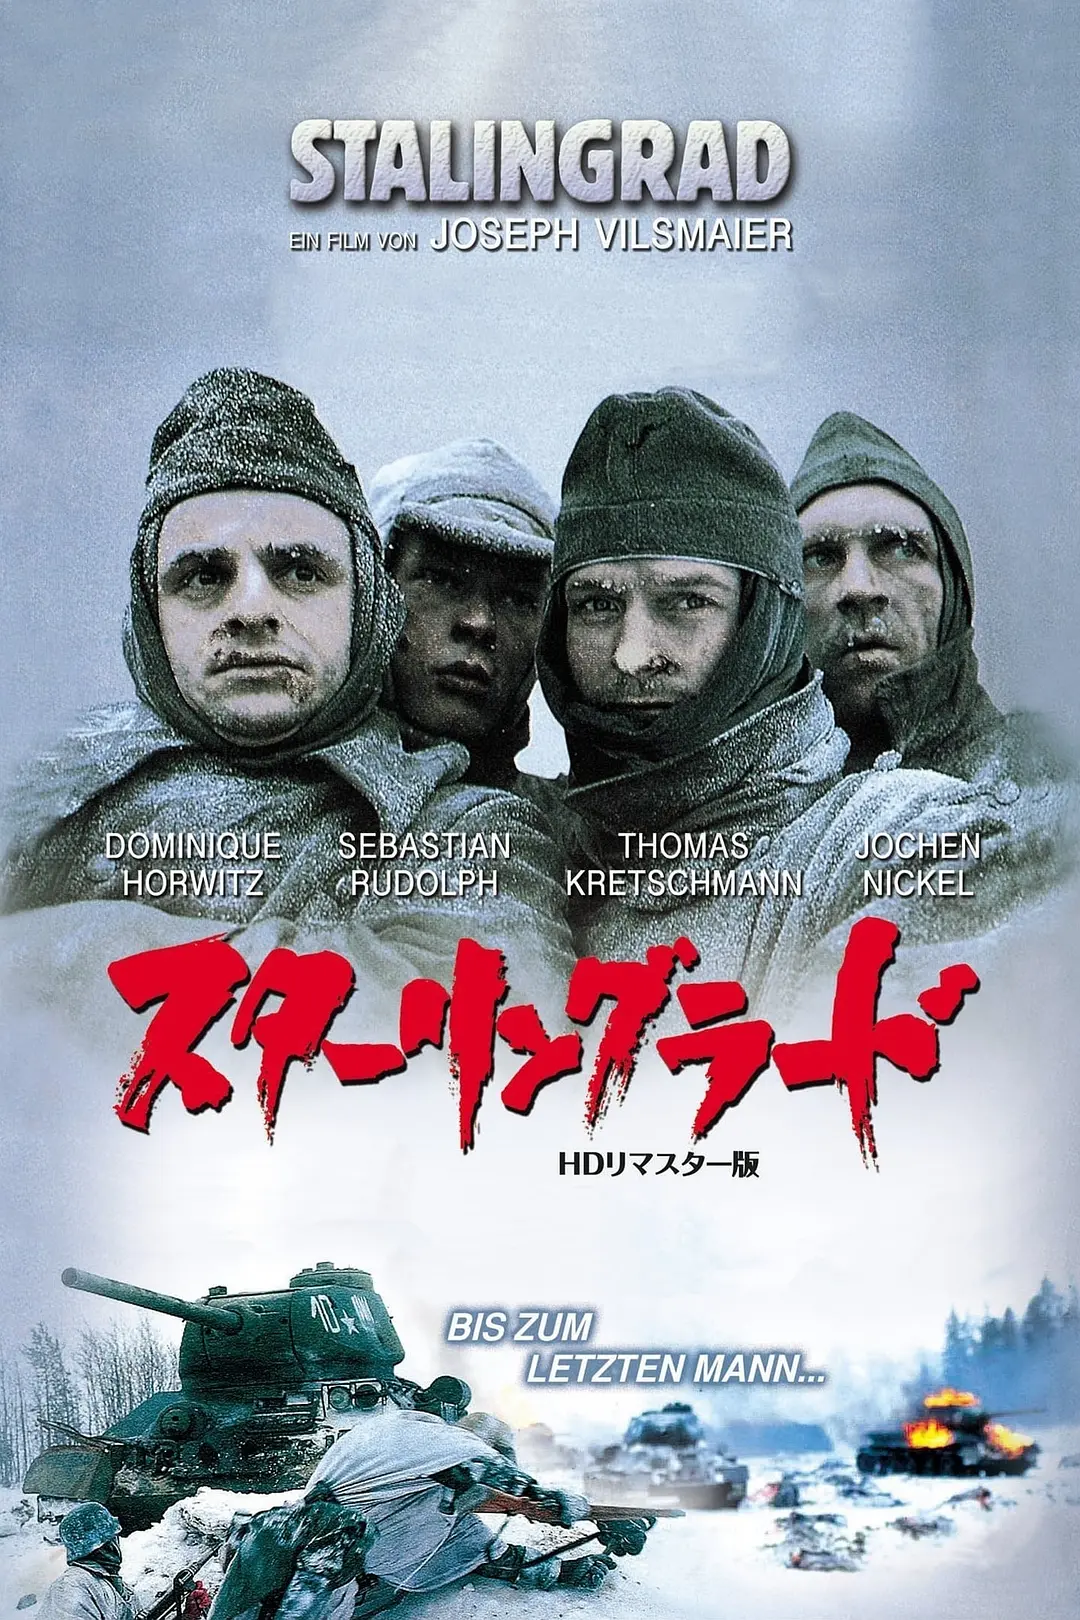 斯大林格勒战役 Stalingrad (1993)